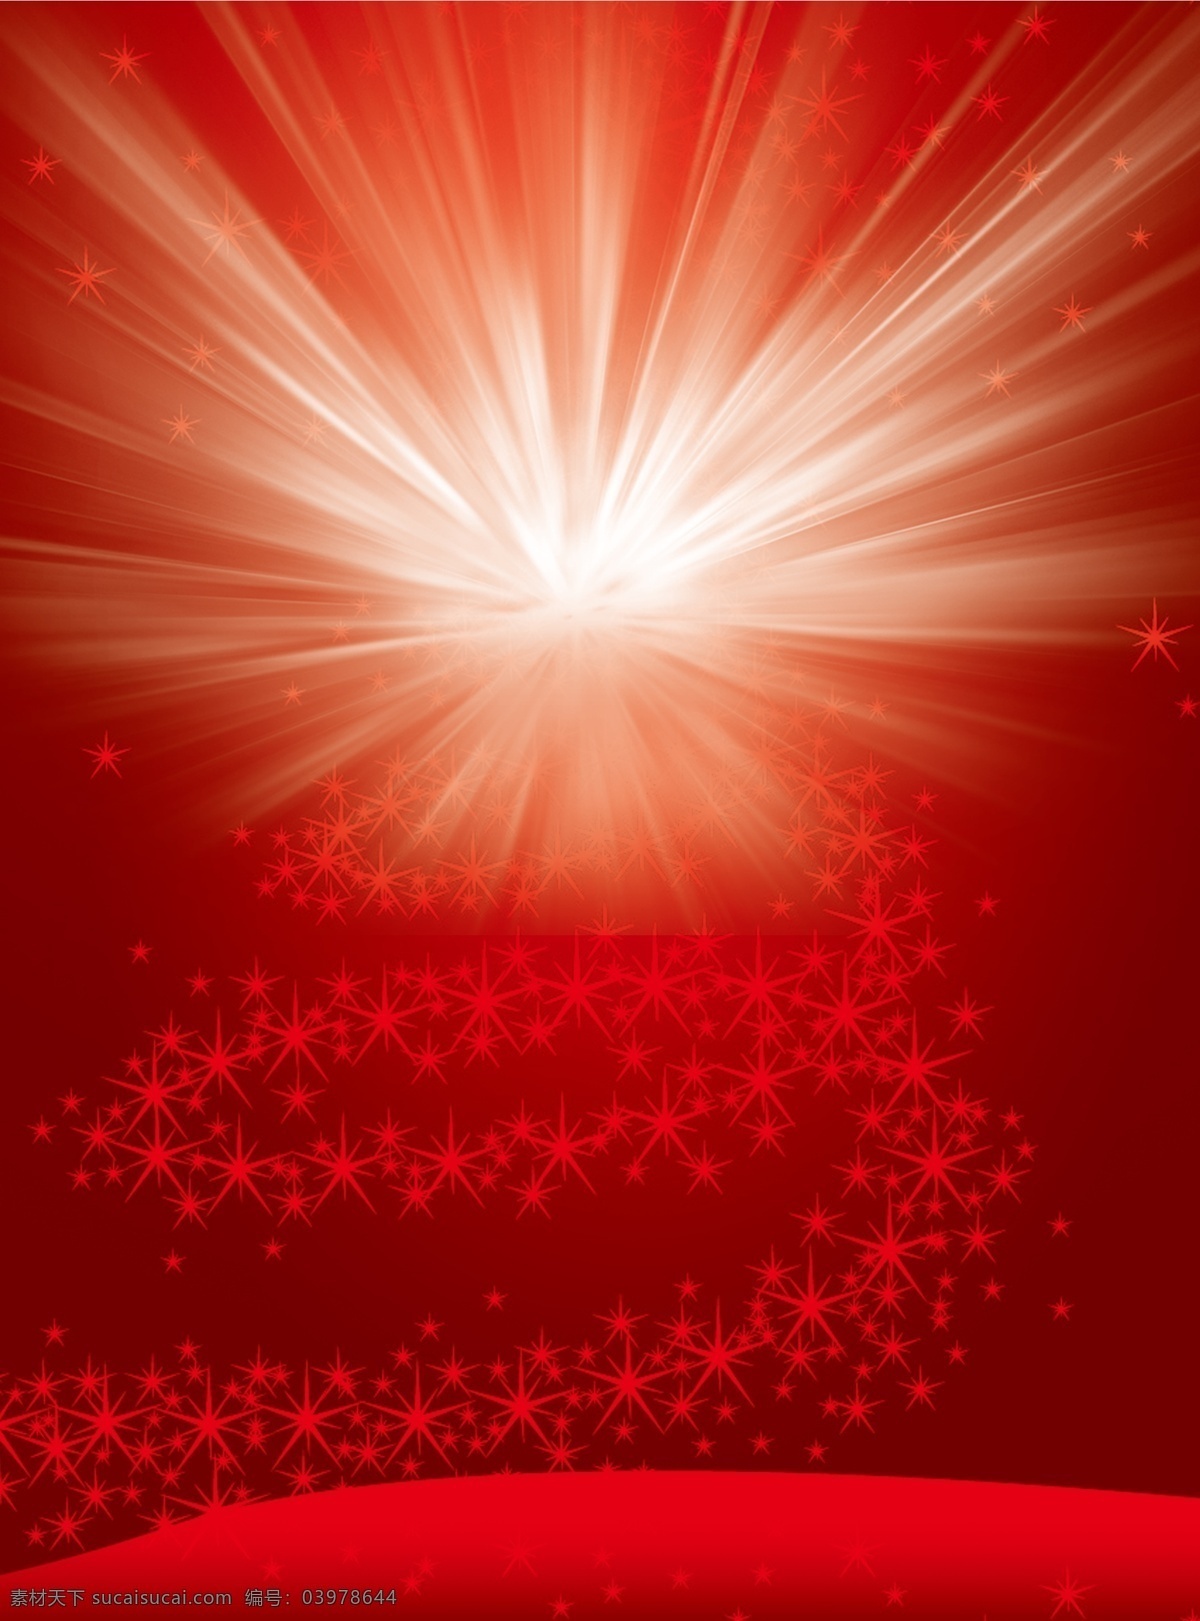 红底背景 红底 星星 闪光 红色 发光 光芒 红色背景 红色素材 红底素材